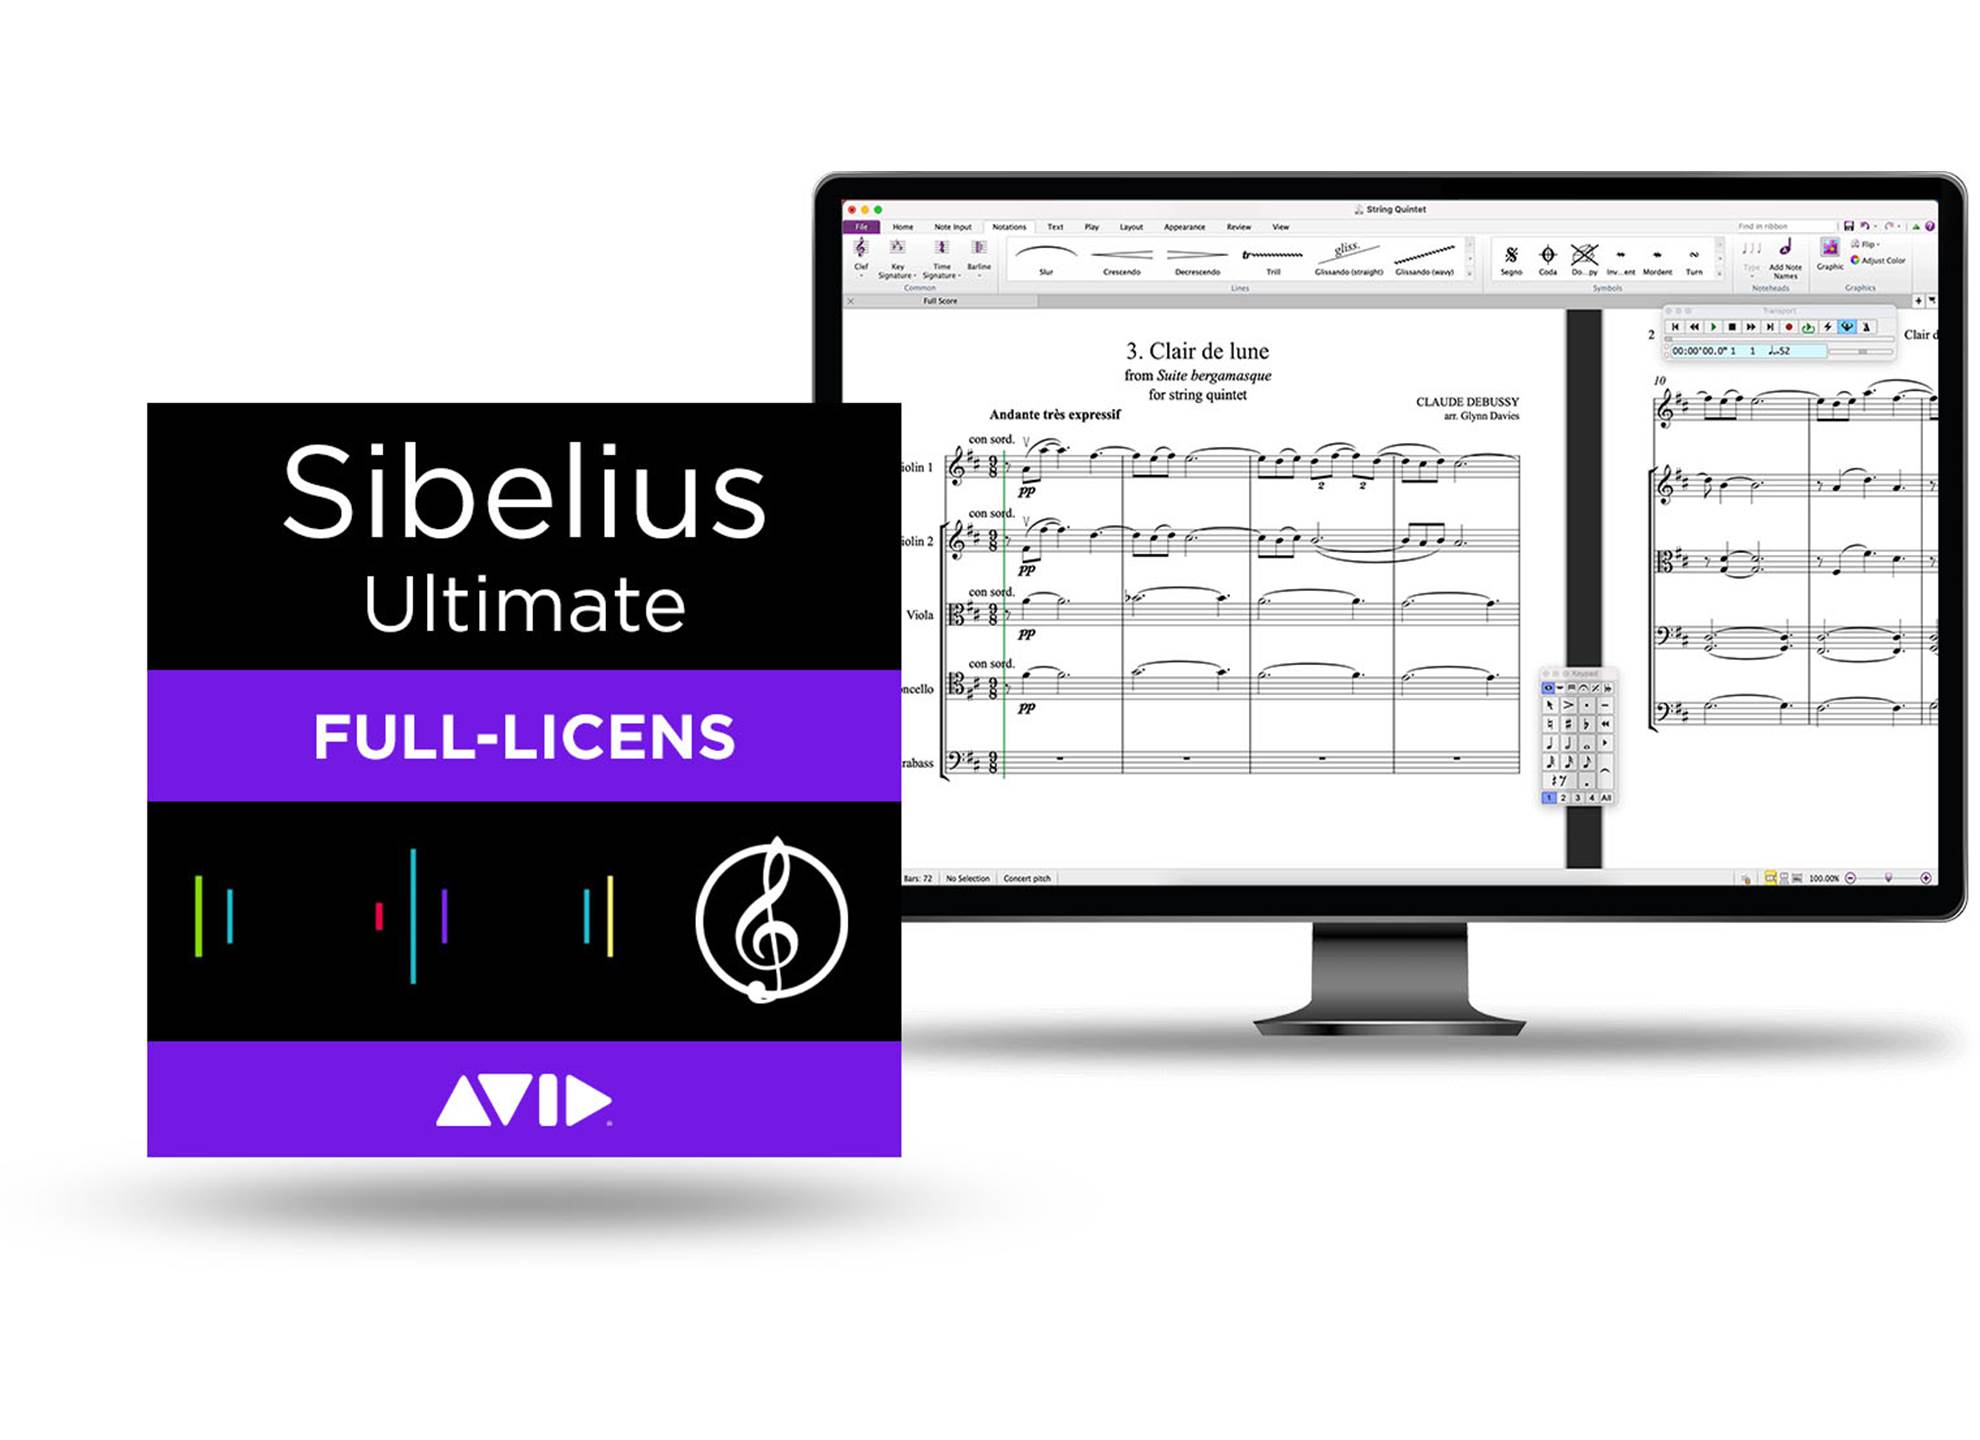 Sibelius Ultimate Full-licens